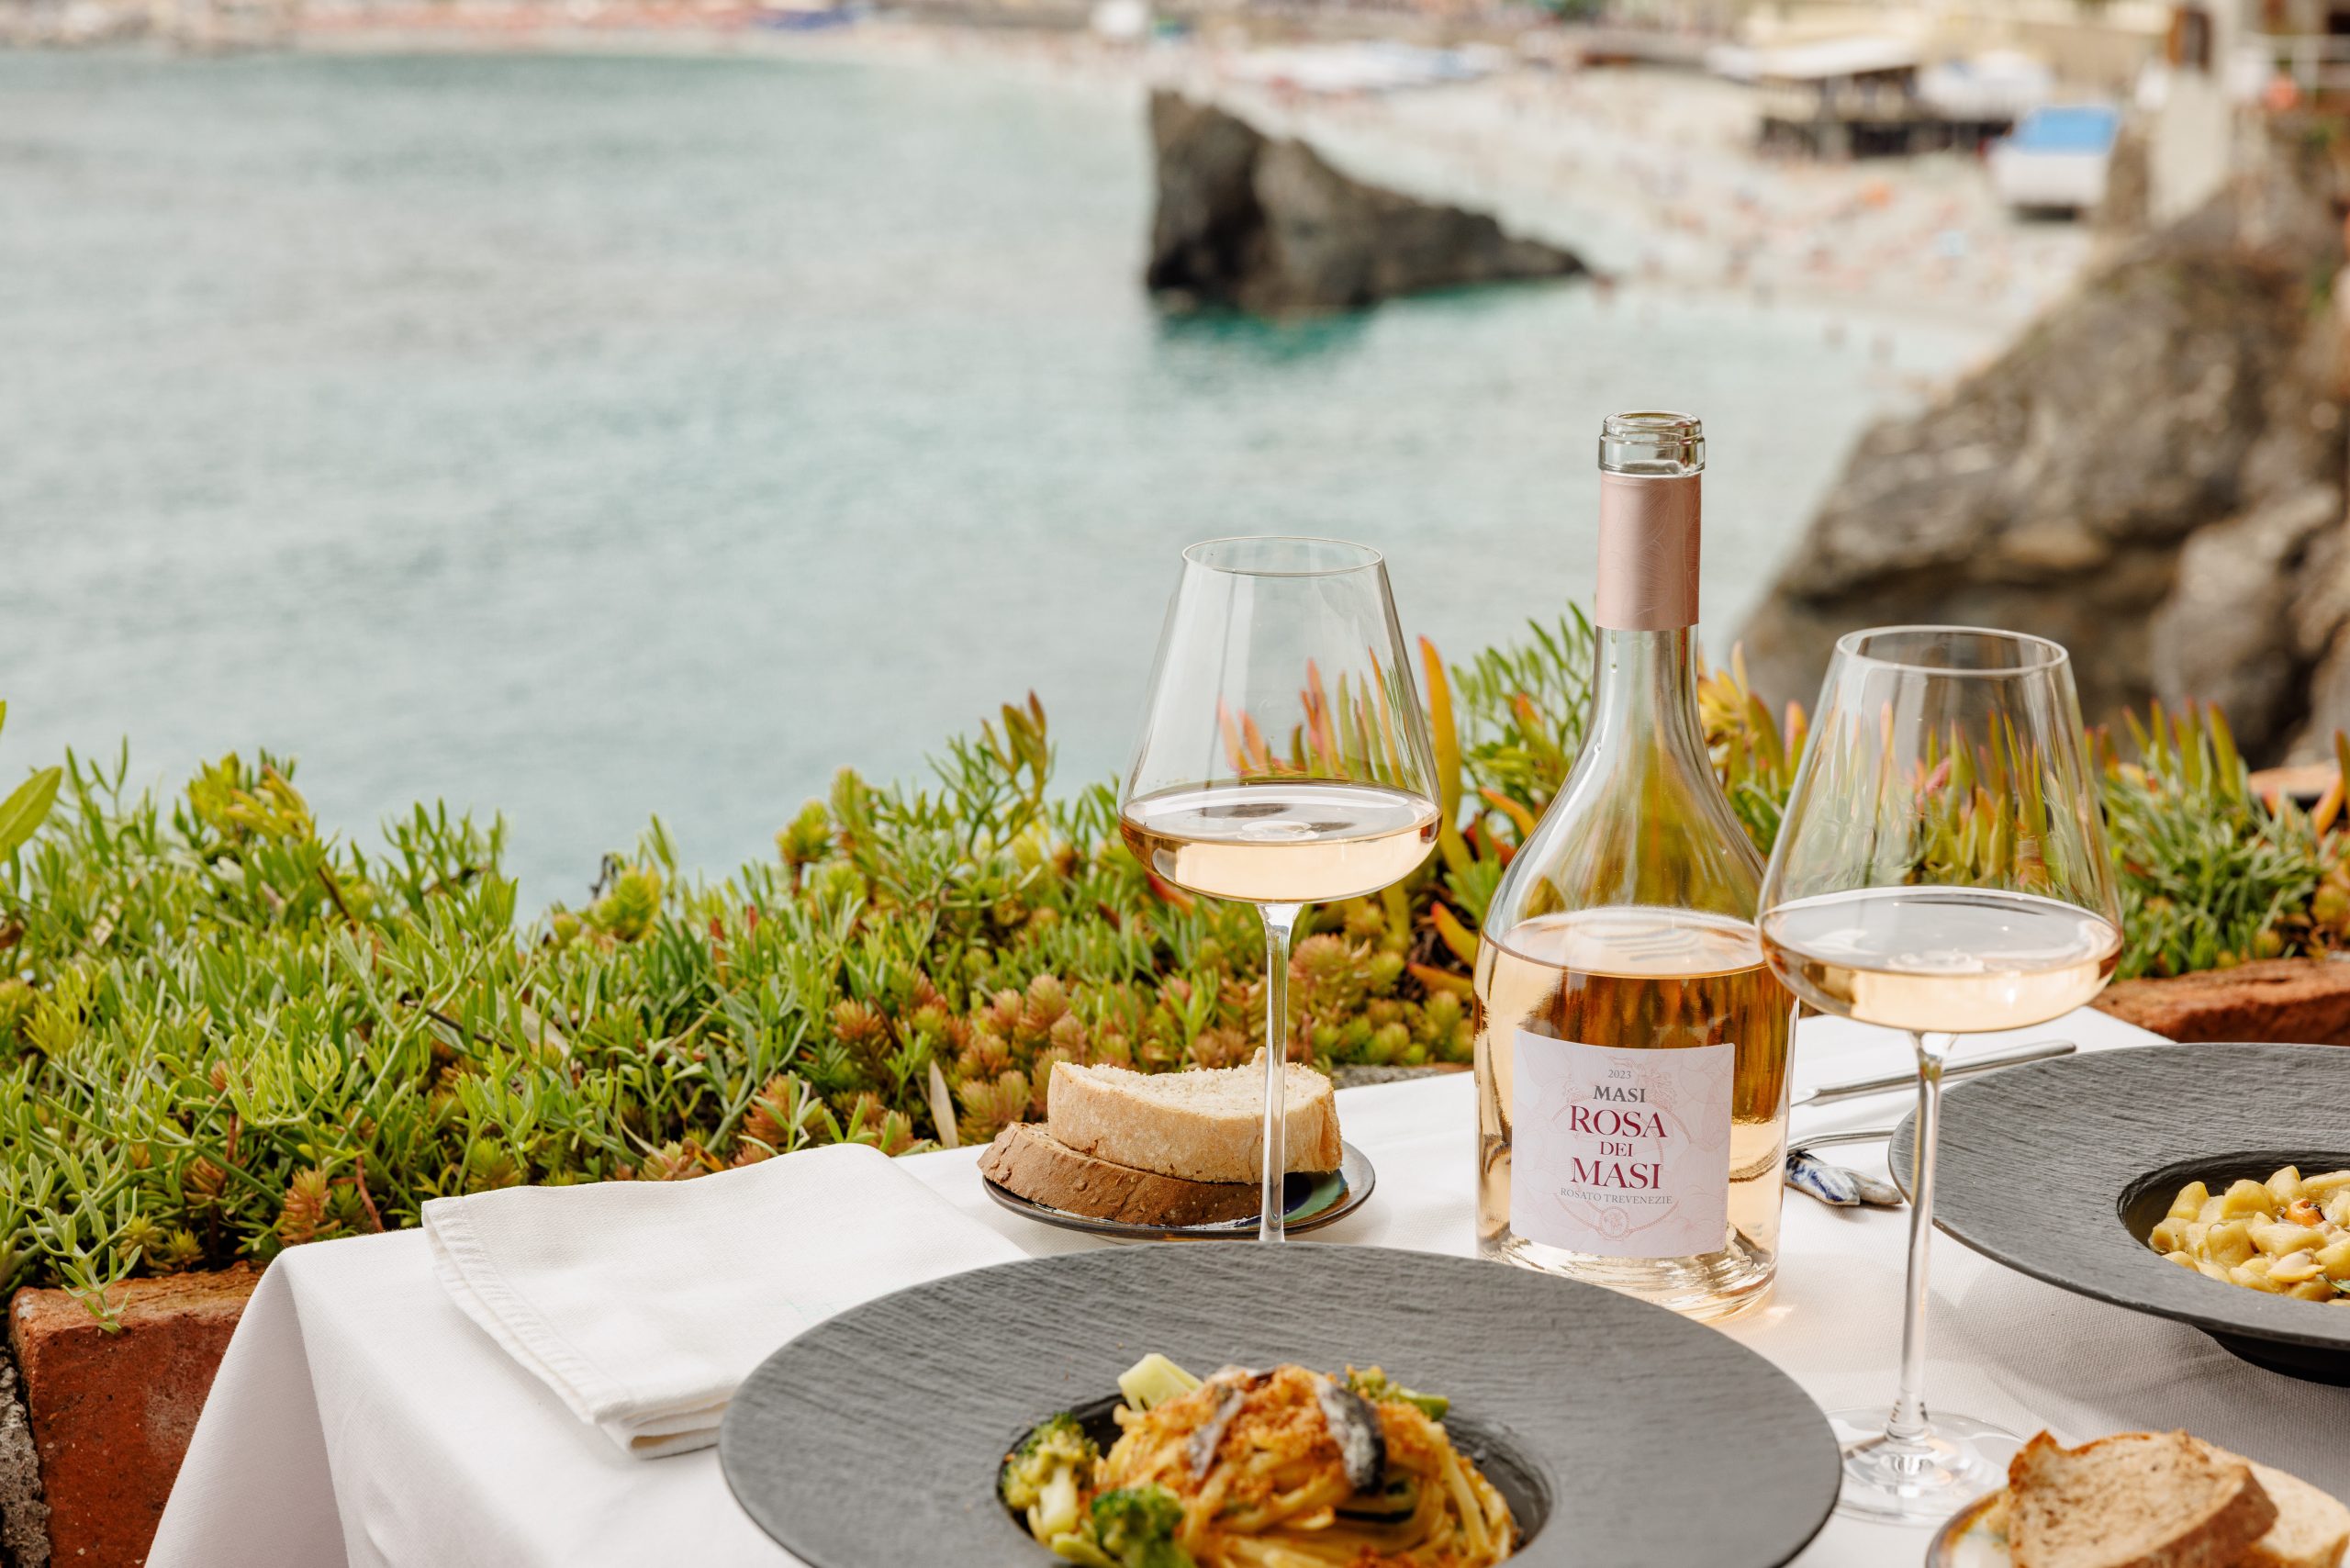 Une table est dressée pour un repas avec vue sur une baie. On y trouve une bouteille de Rosa dei Masi, deux verres de vin, du pain, un plat de pâtes et des serviettes.